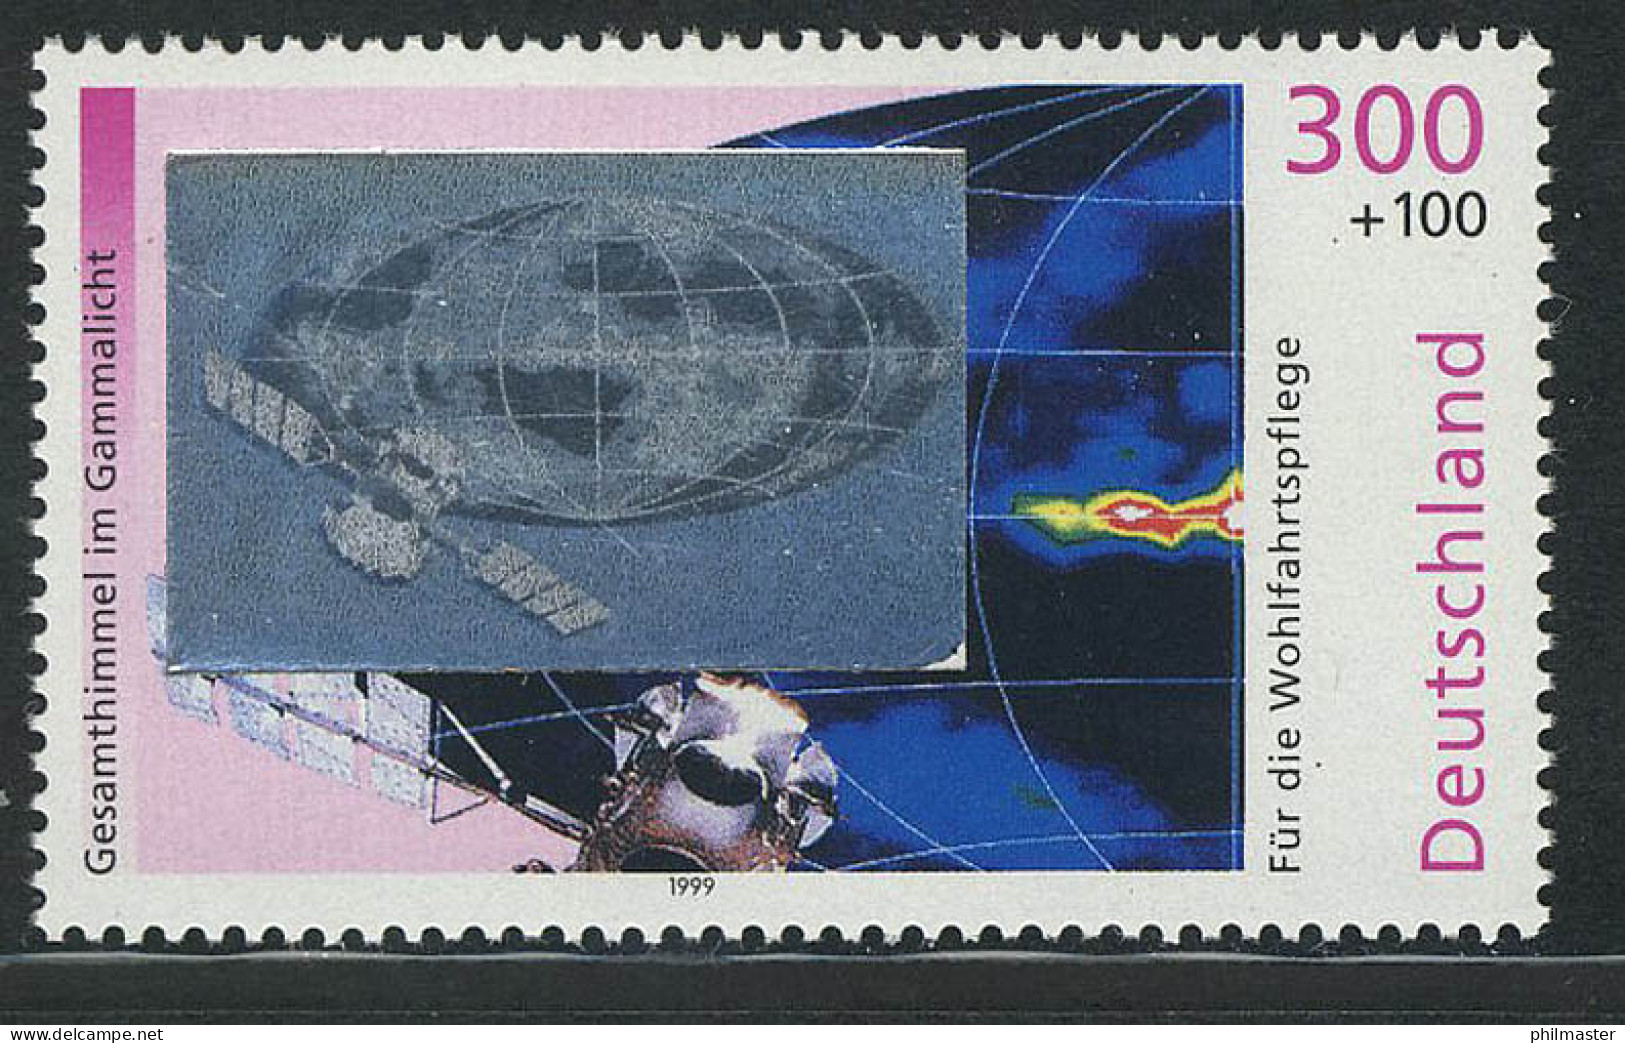 2081 Kosmos Gammastrahlung, Mit Hologramm Auf Der Marke, Postfrisch ** - Hologrammes